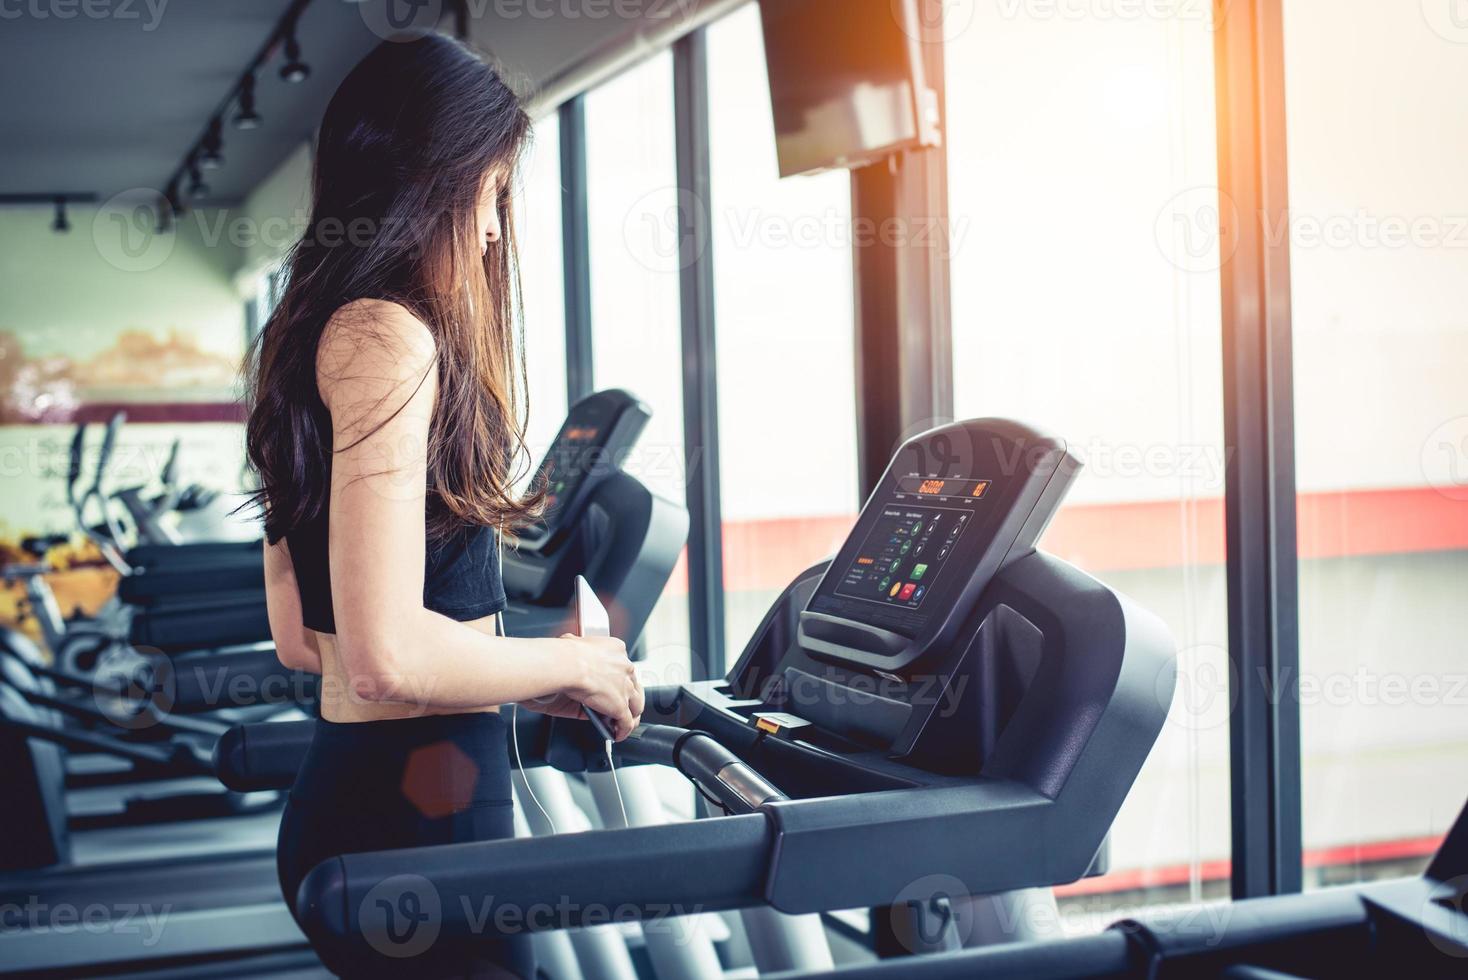 aziatische vrouw die slimme telefoon gebruikt tijdens training of krachttraining bij fitness gym op loopband. ontspannen en technologie concept. sport oefening en gezondheidszorg thema. gelukkig en comfortabel humeur foto